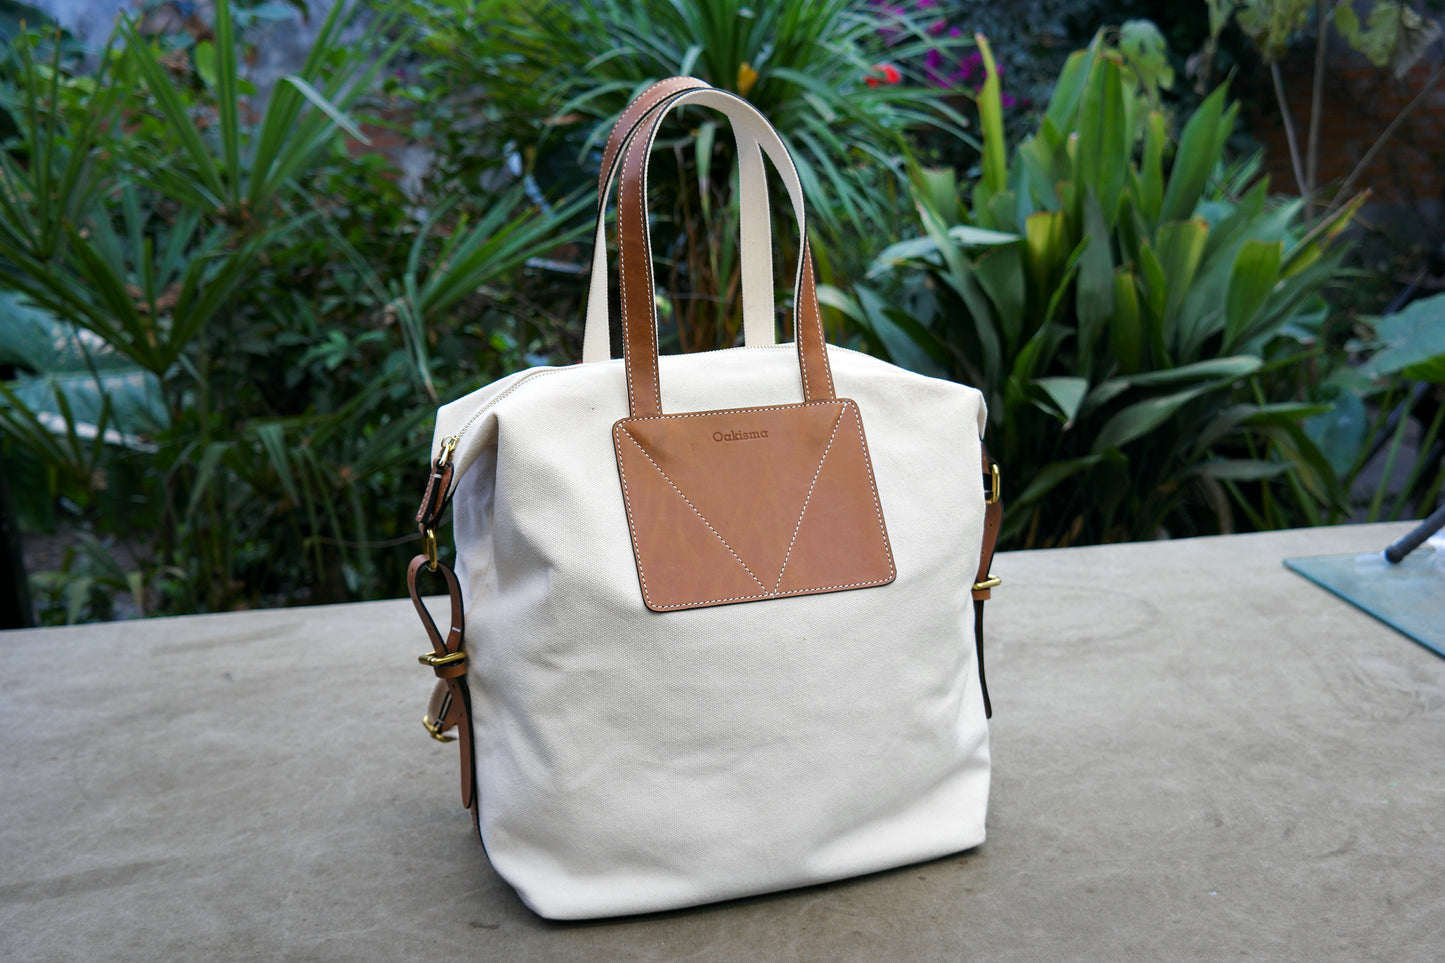 student bag/backpack,Canvas Backpack/rucksack/handbag/Leather bag;Bag pattern;Bag making